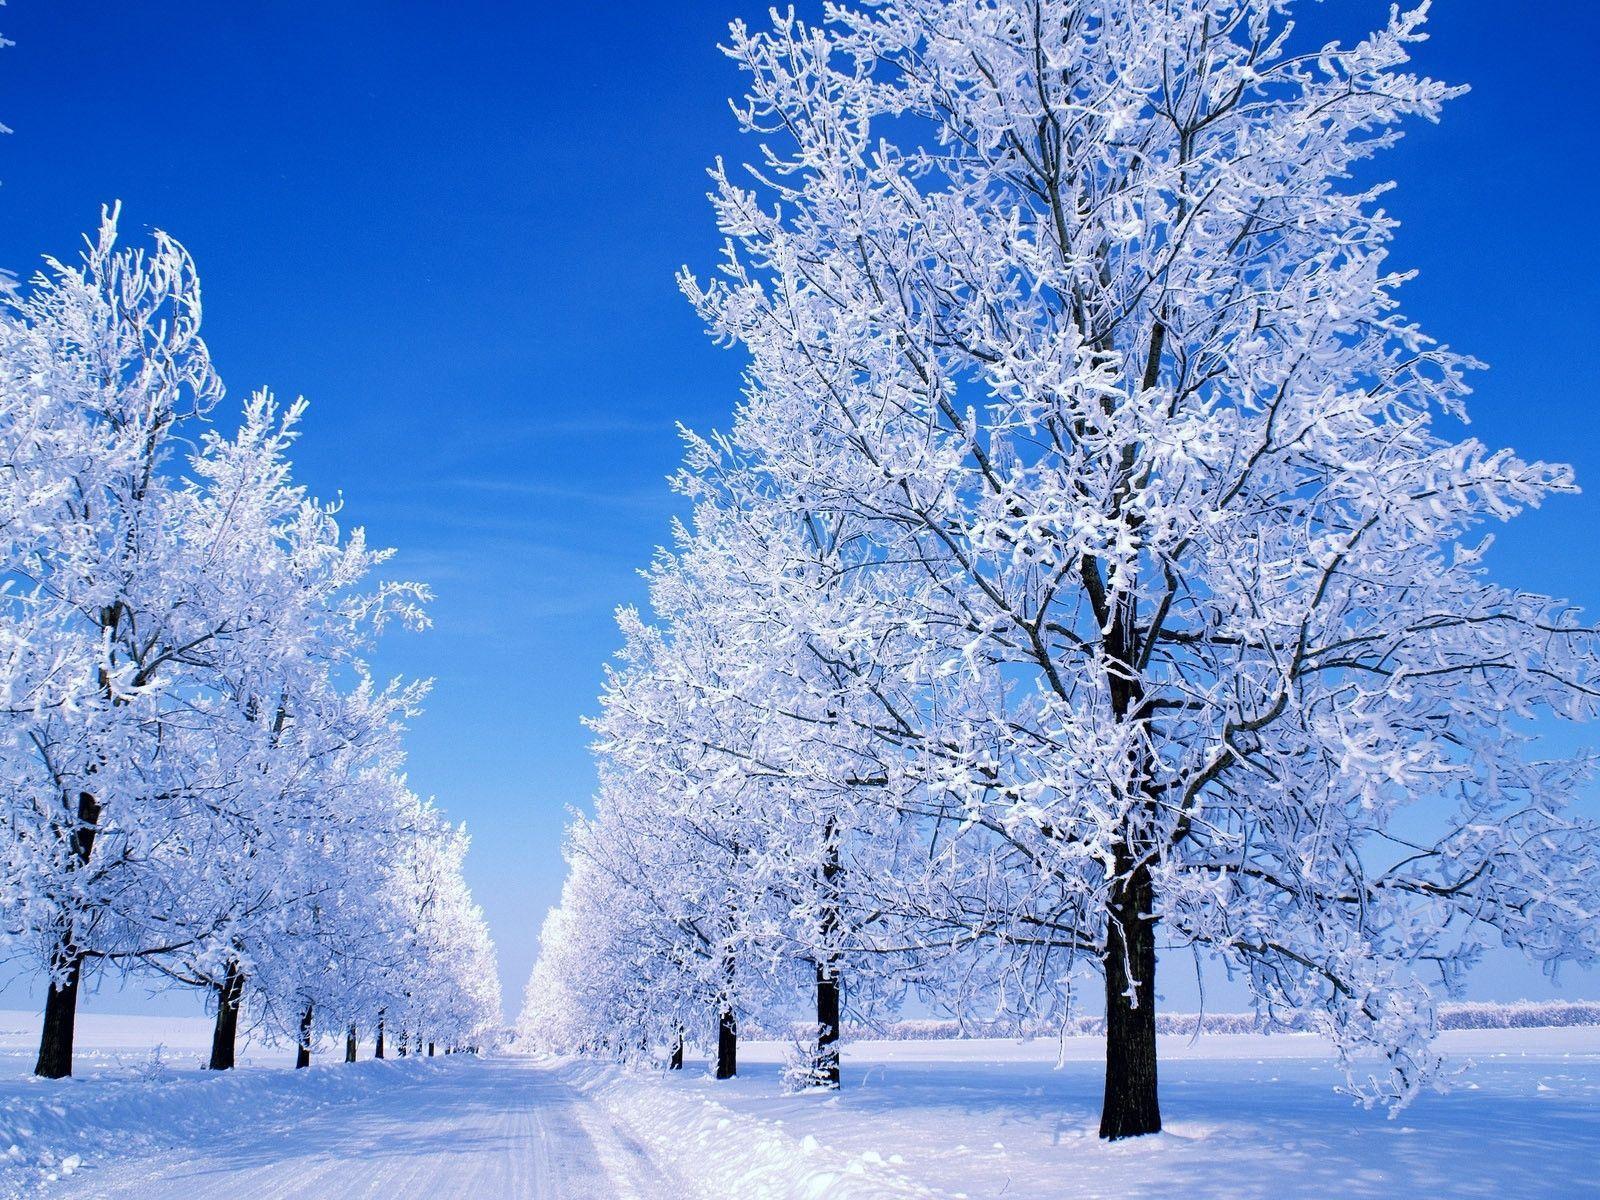 Great Winter Snowy Scene desktop wallpaper and